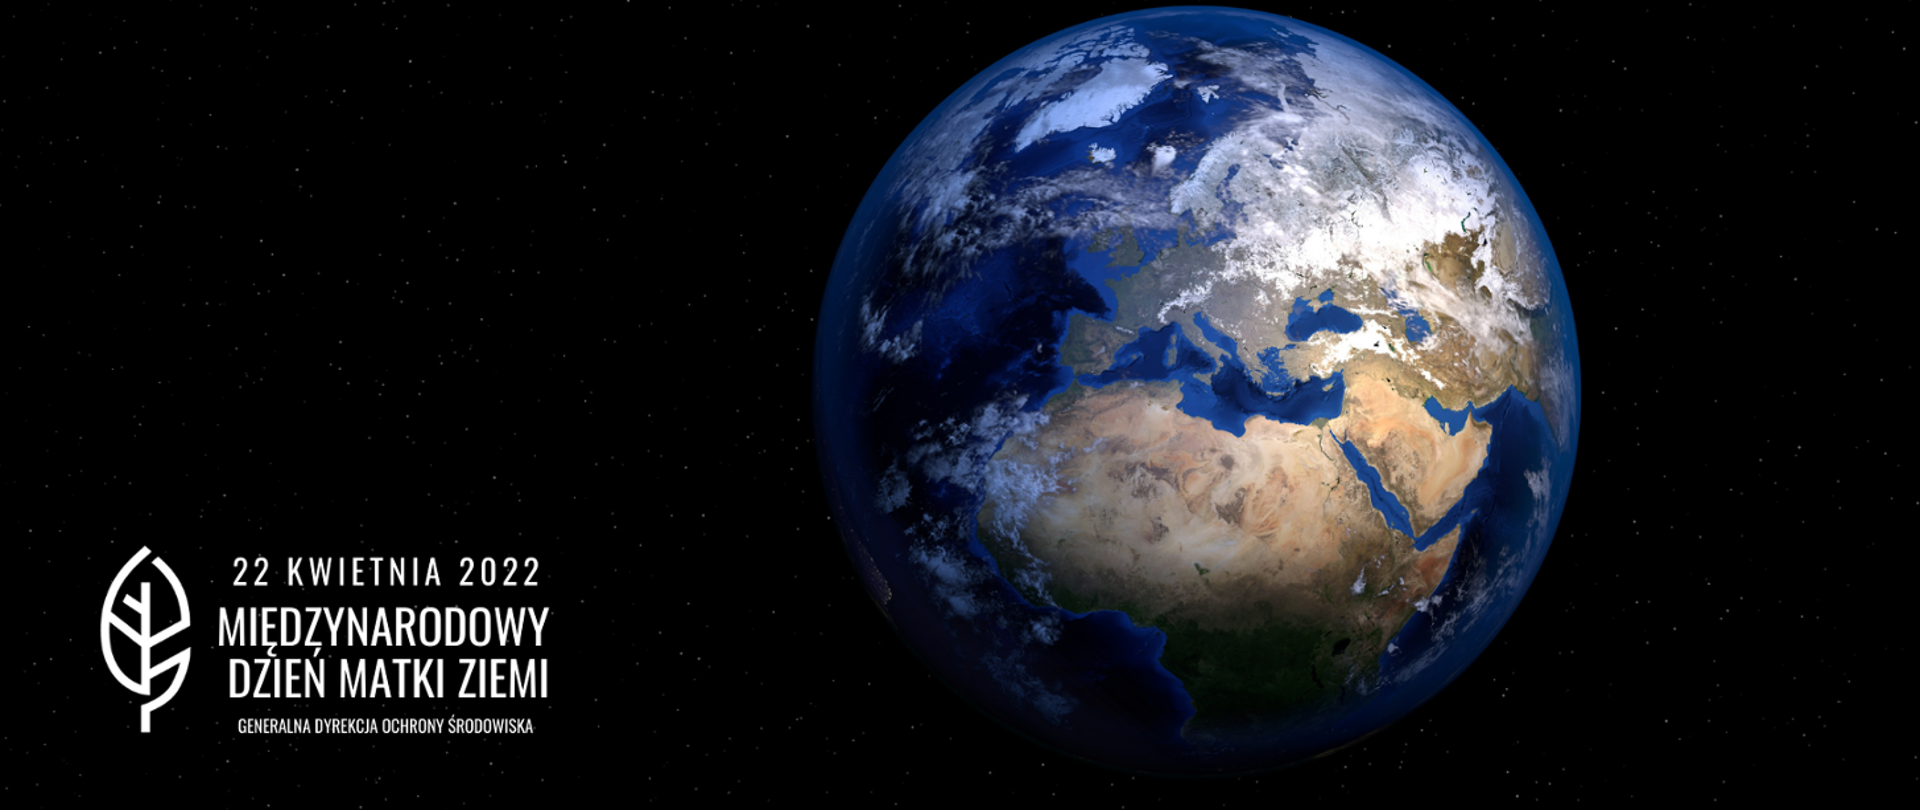 z oddali na ciemnym jakby z kosmosu widoczna planeta ziemia. Z prawej strony liść logo Generalnej Dyrekcji Ochrony Środowiska i napis 22 kwietnia 2022 Międzynarodowy Dzień Matki Ziemi 